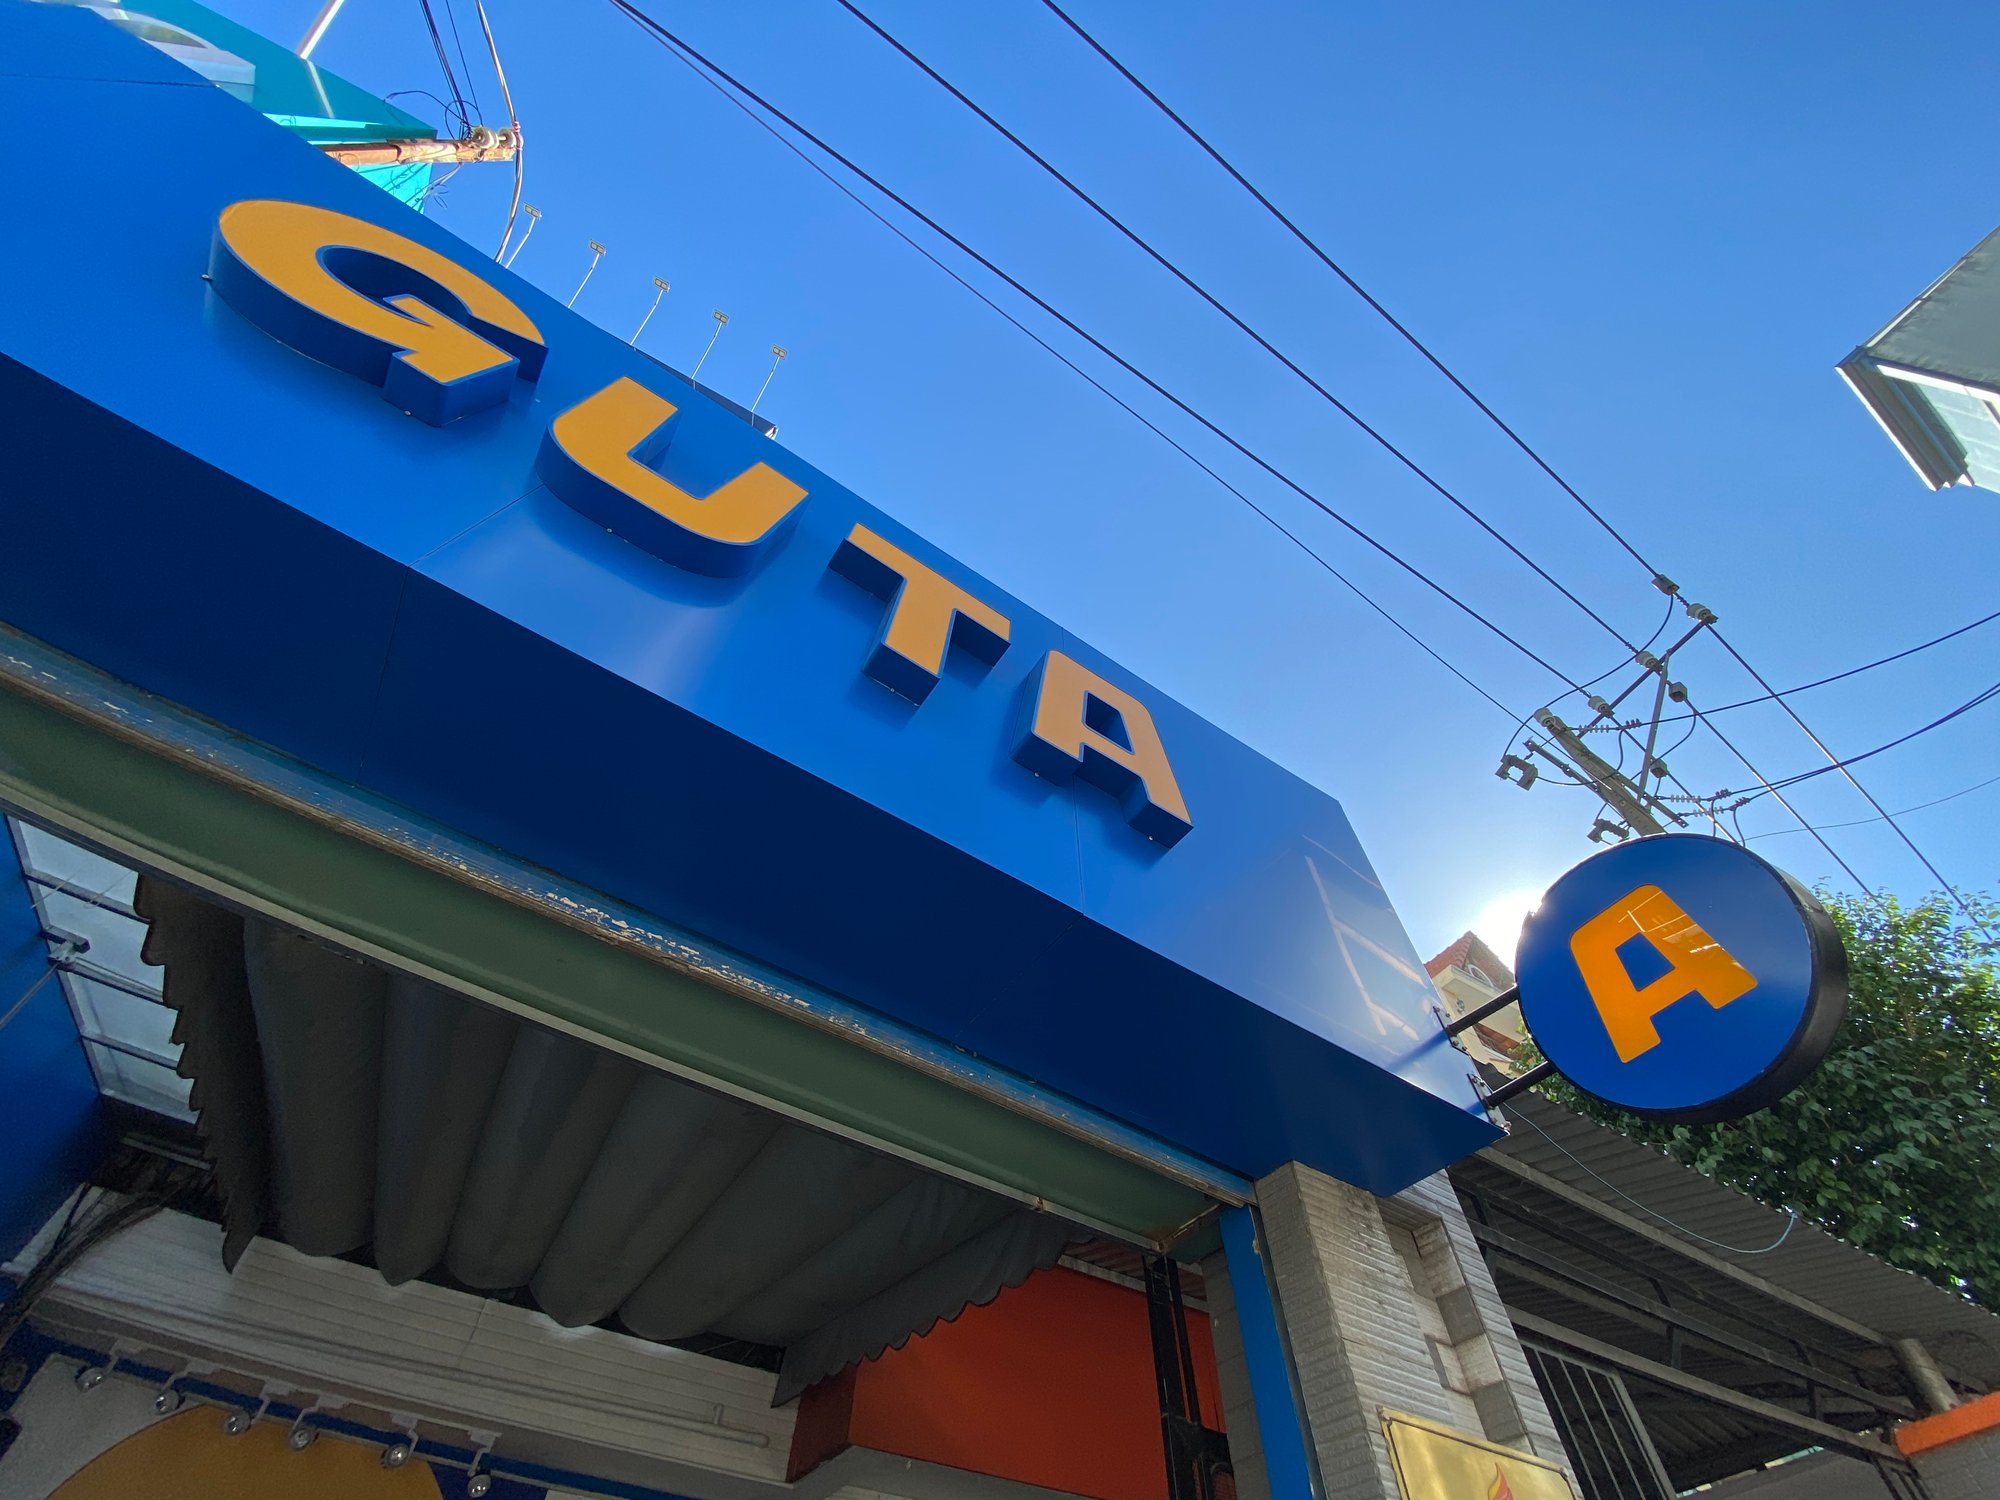 GUTA Cafe Kiosk